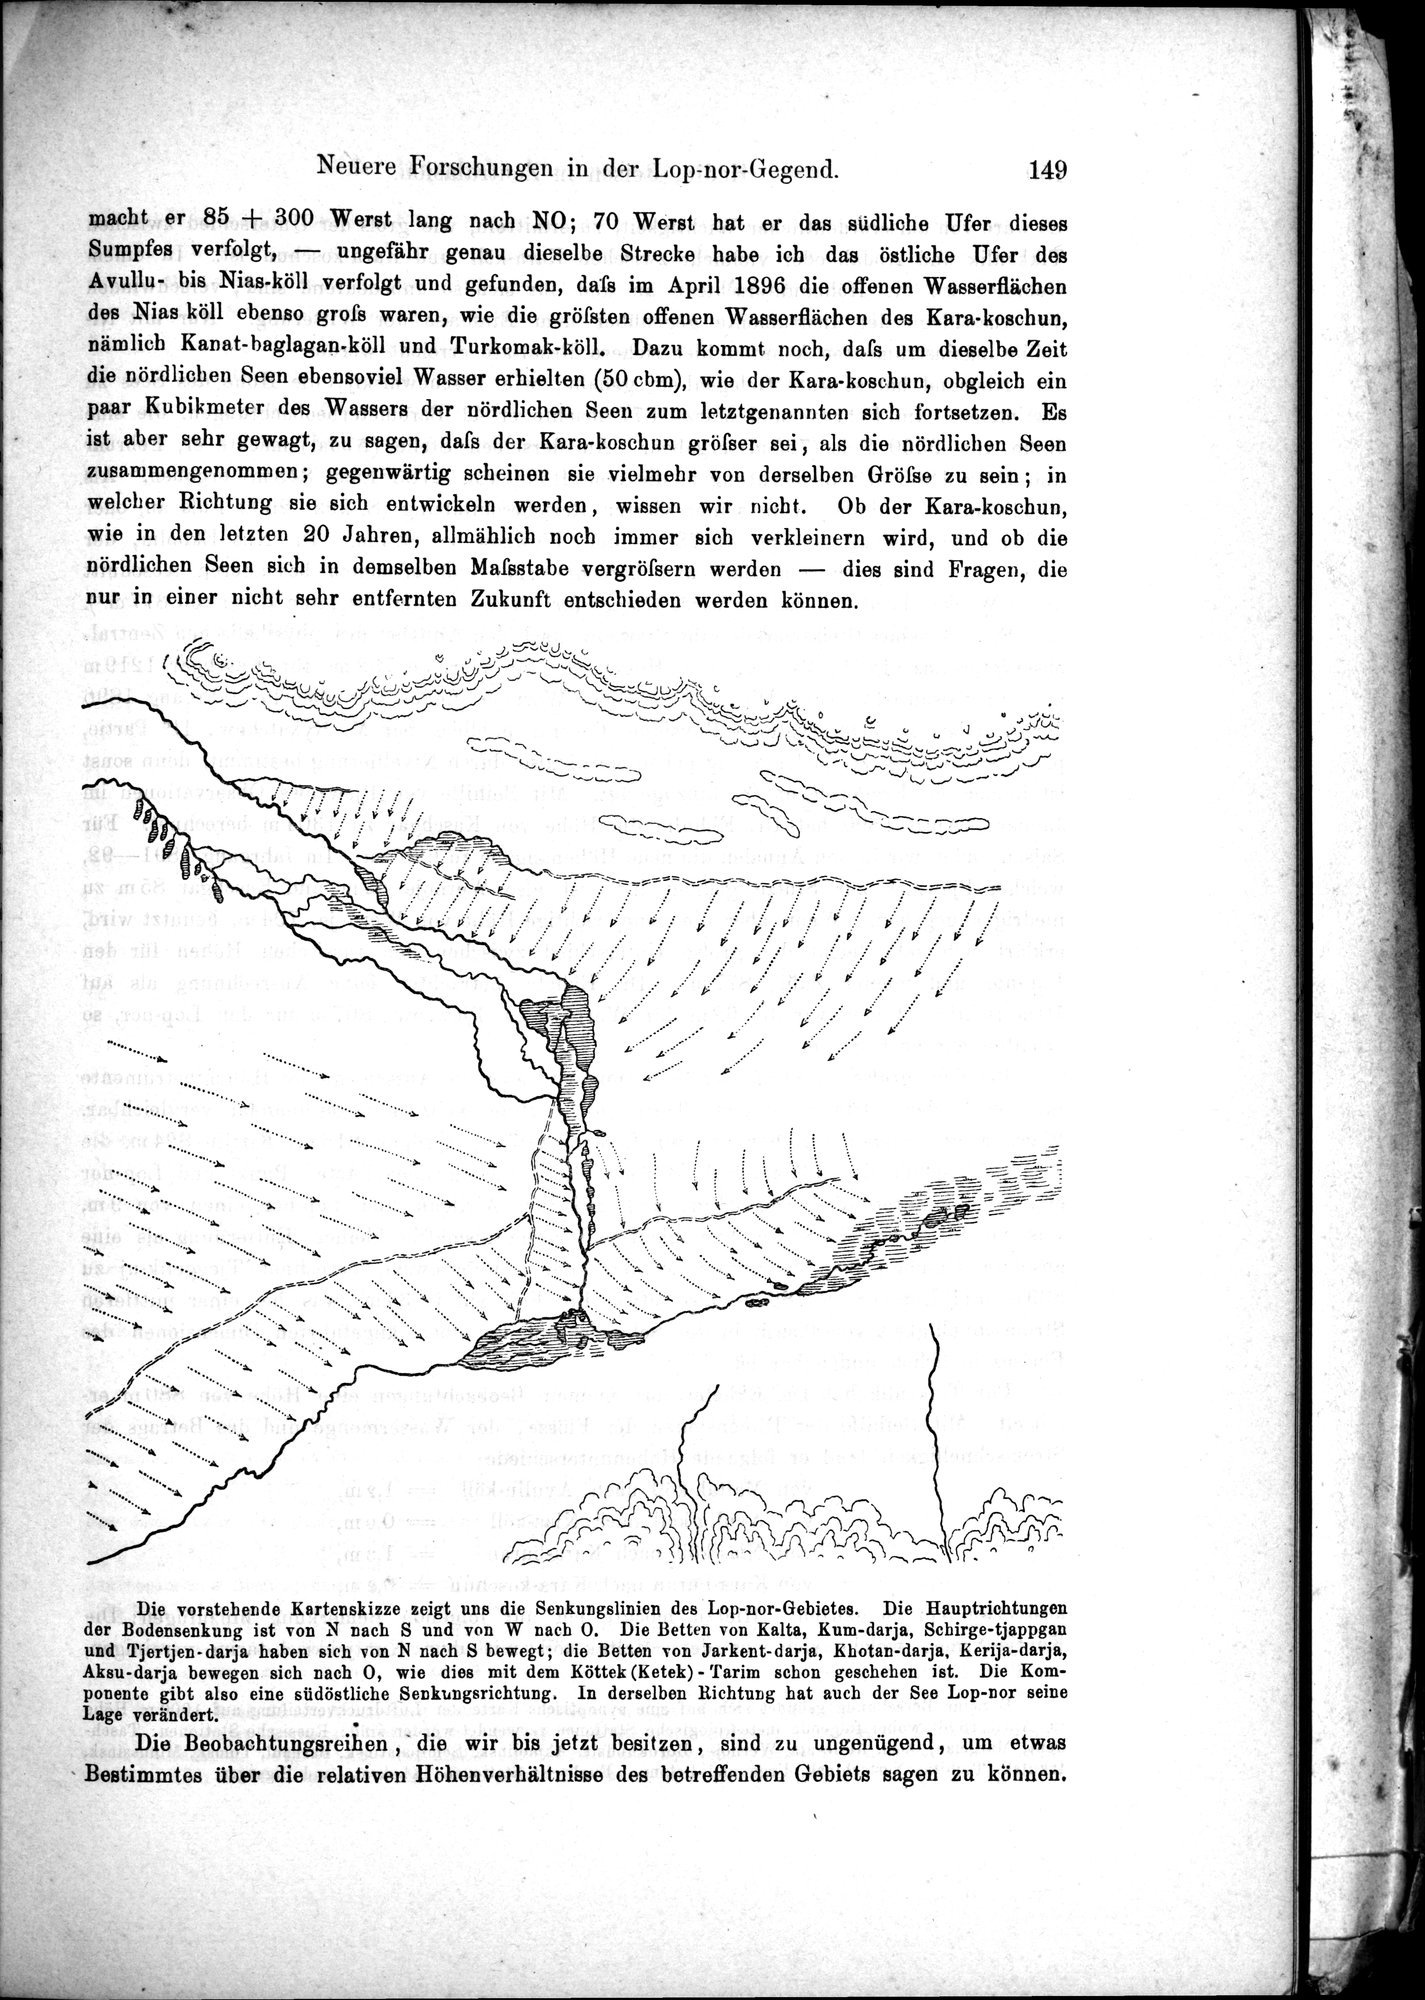 Die Geographische-Wissenschaftlichen Ergebnisse meiner Reisen in Zentralasien, 1894-1897 : vol.1 / Page 161 (Grayscale High Resolution Image)